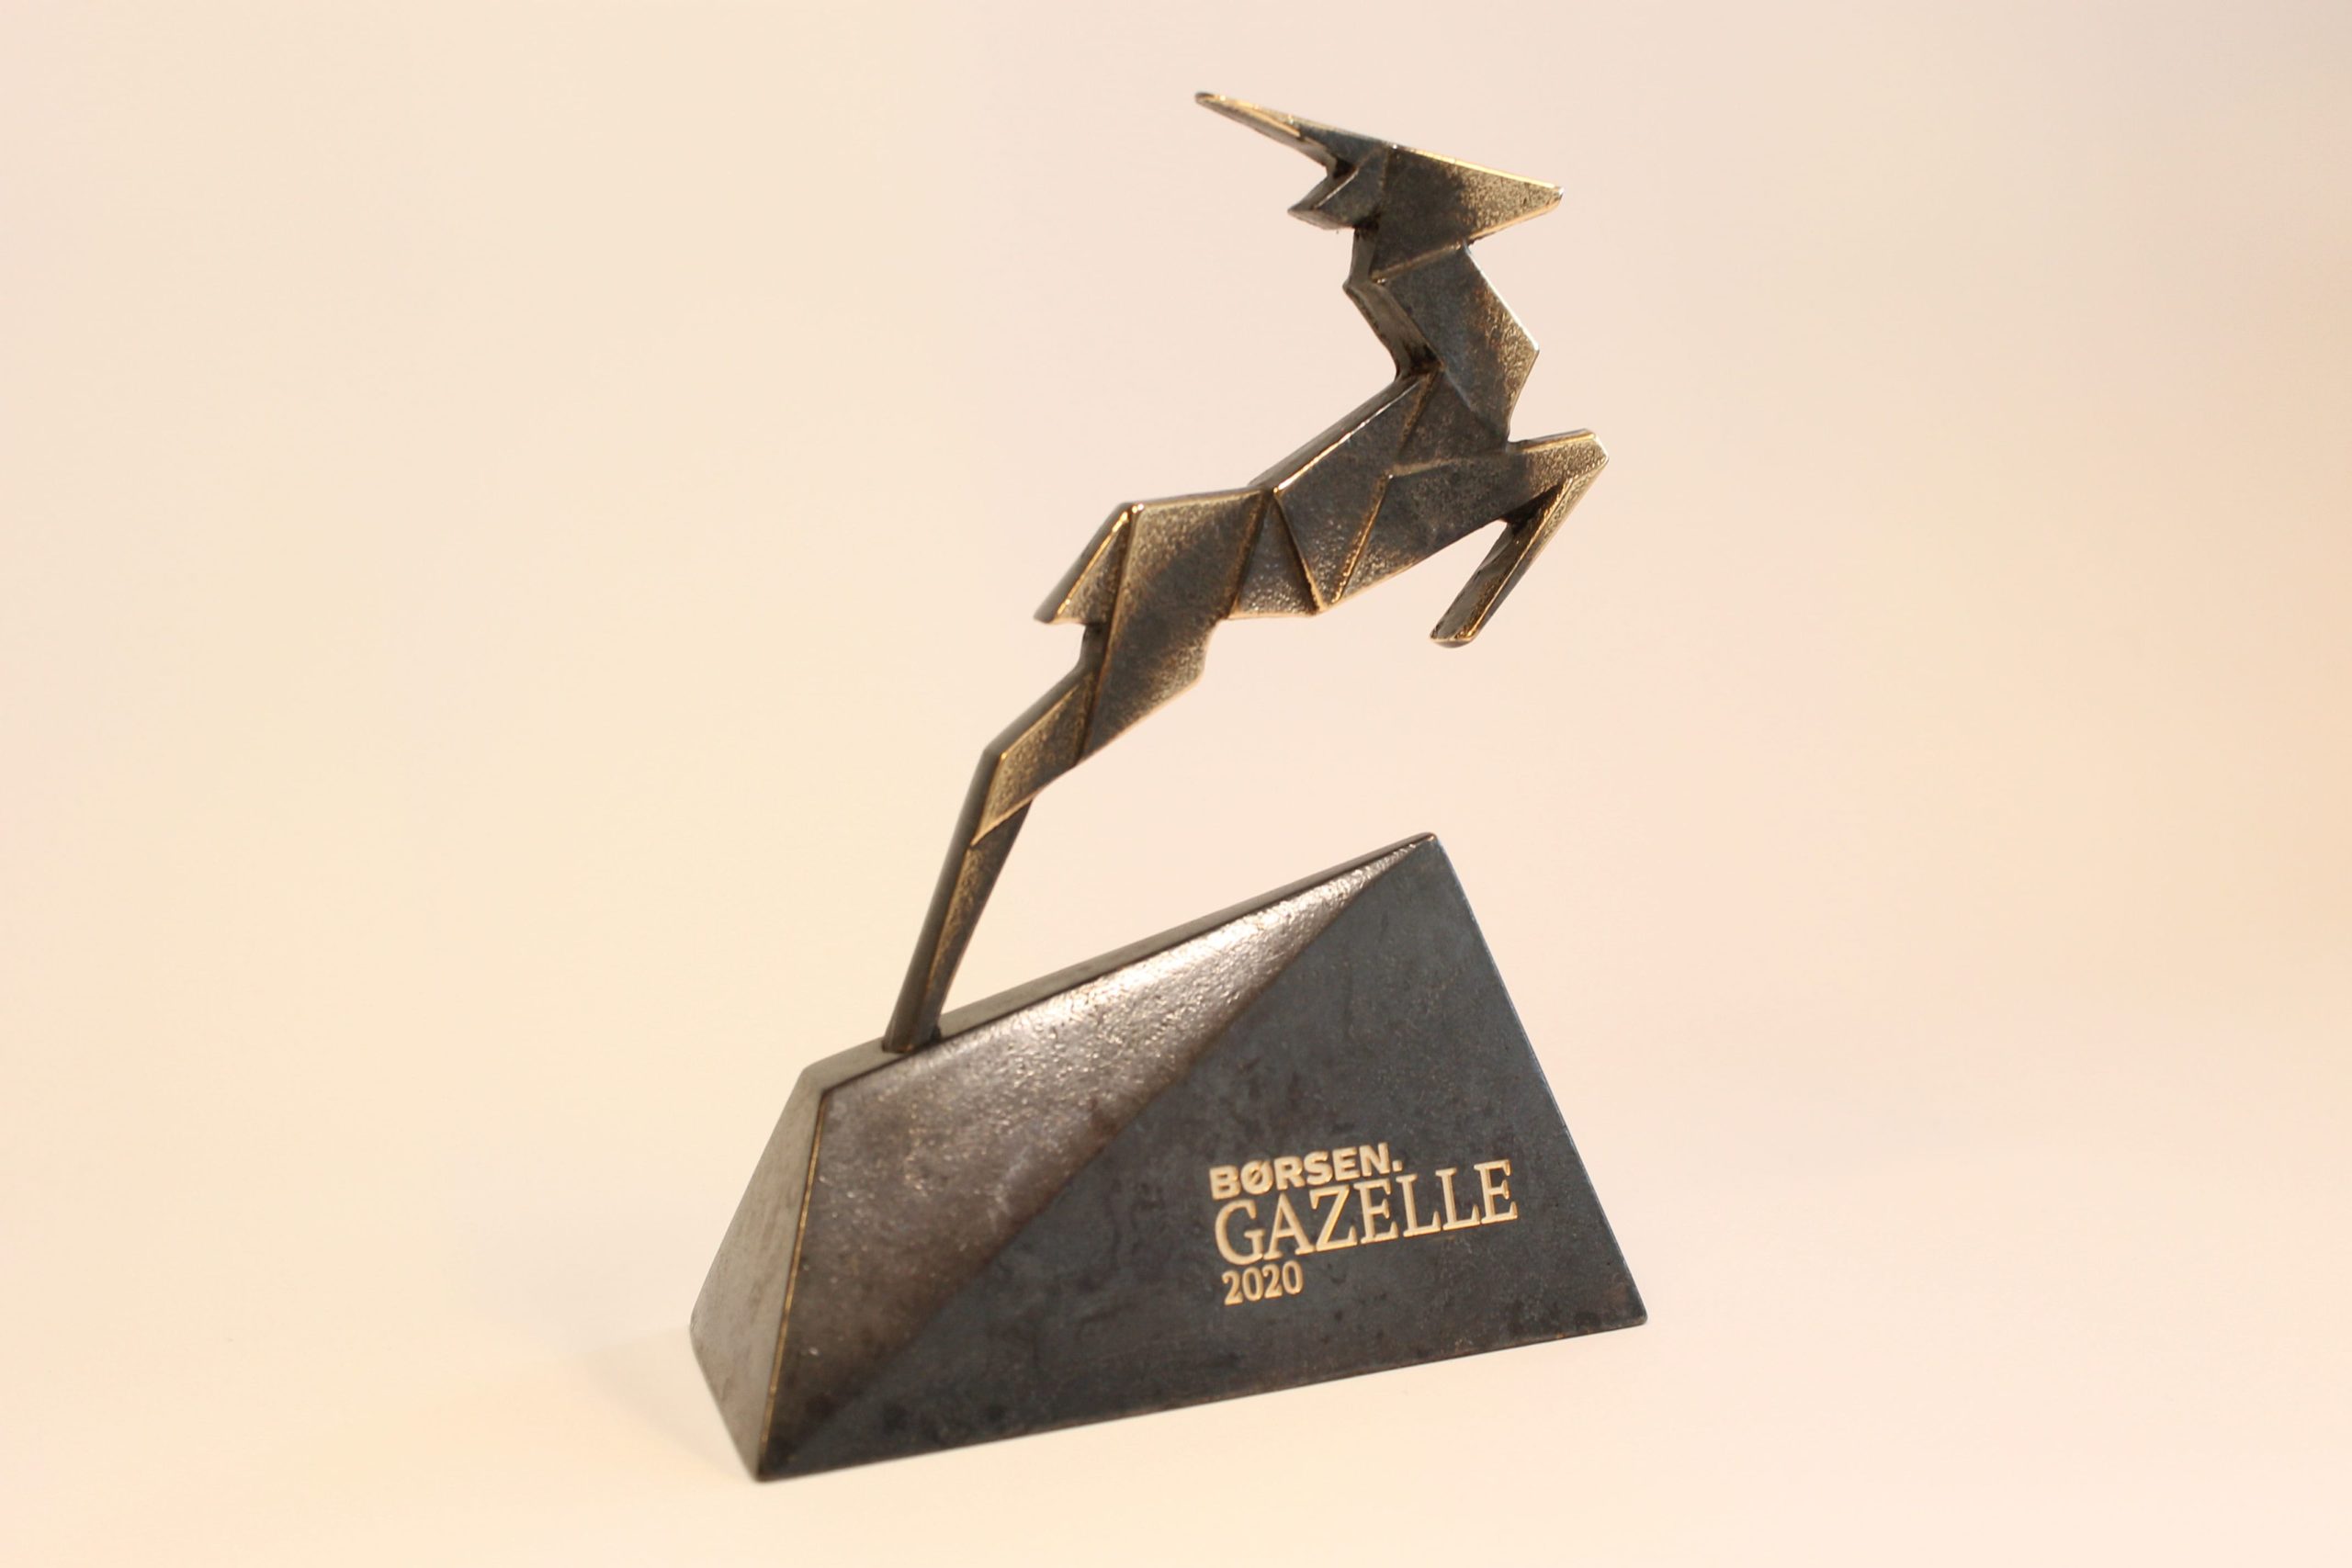 Gazelle 2020 award for DanCables